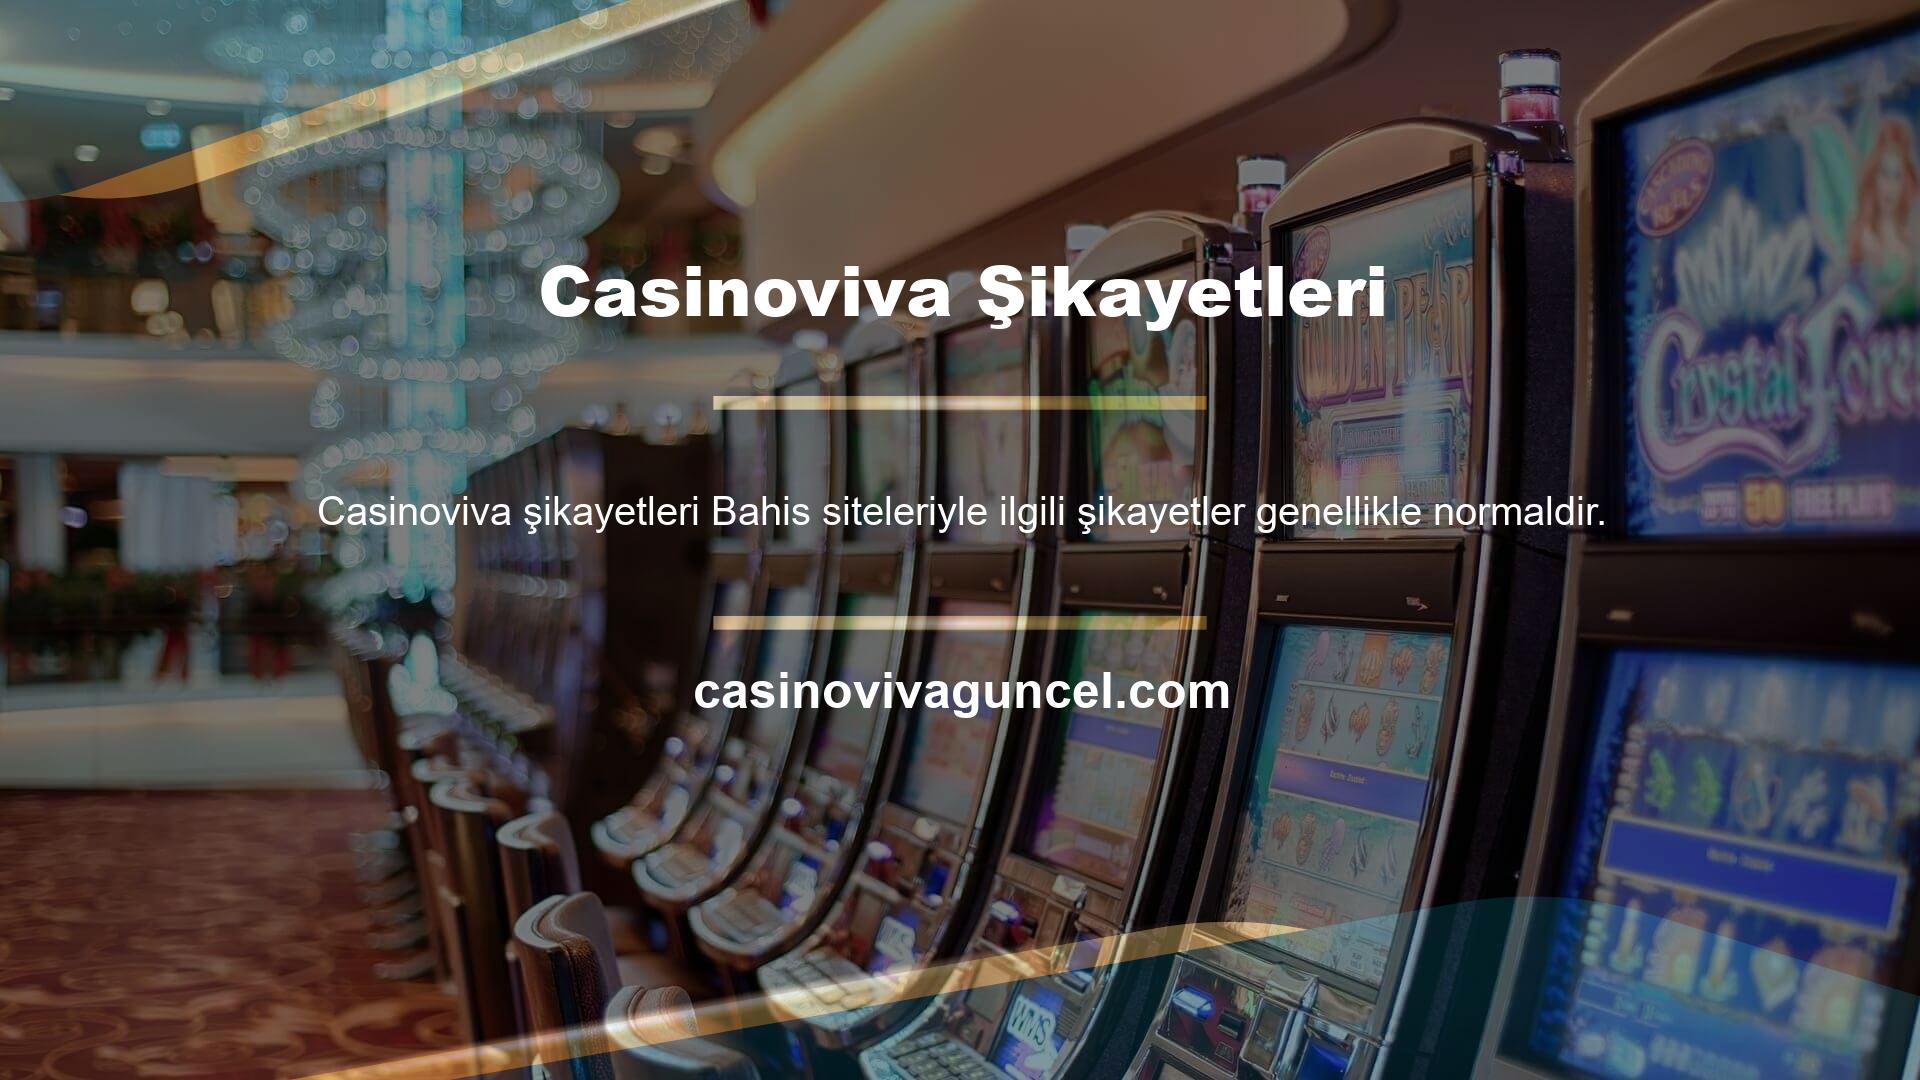 Casinoviva Kumar genellikle yasadışı bahis alanlarına hizmet veren bir sayfa olduğu için, bağlı kuruluşlar ve bu sitelerle ilgili sorunlar da vardır